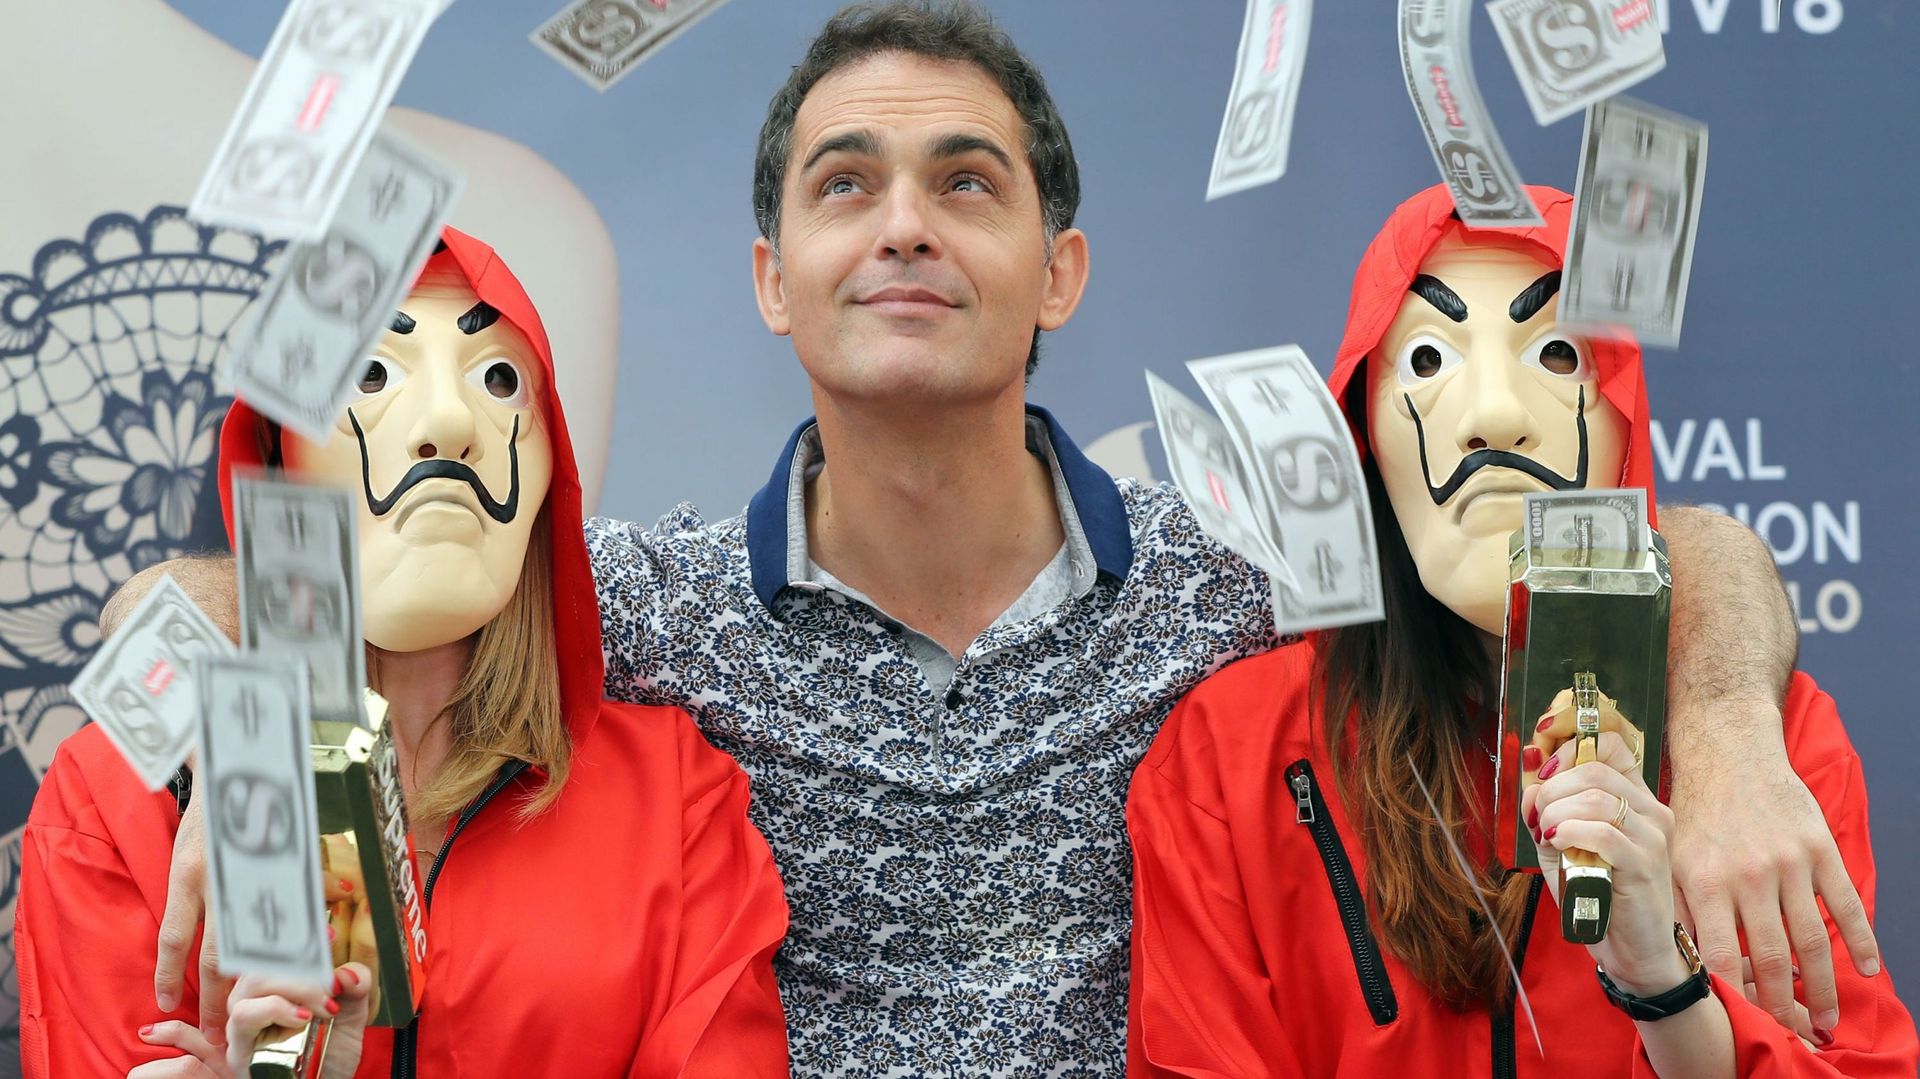 L’acteur espagnol Pedro Alonso pose avec deux femmes habillées en personnages de la série à succès "La Casa de Papel" à Monaco, série diffusée sur Netlfix. Cette entreprise de streaming américaine voit son chiffre d’affaires fortement augmenter depuis le